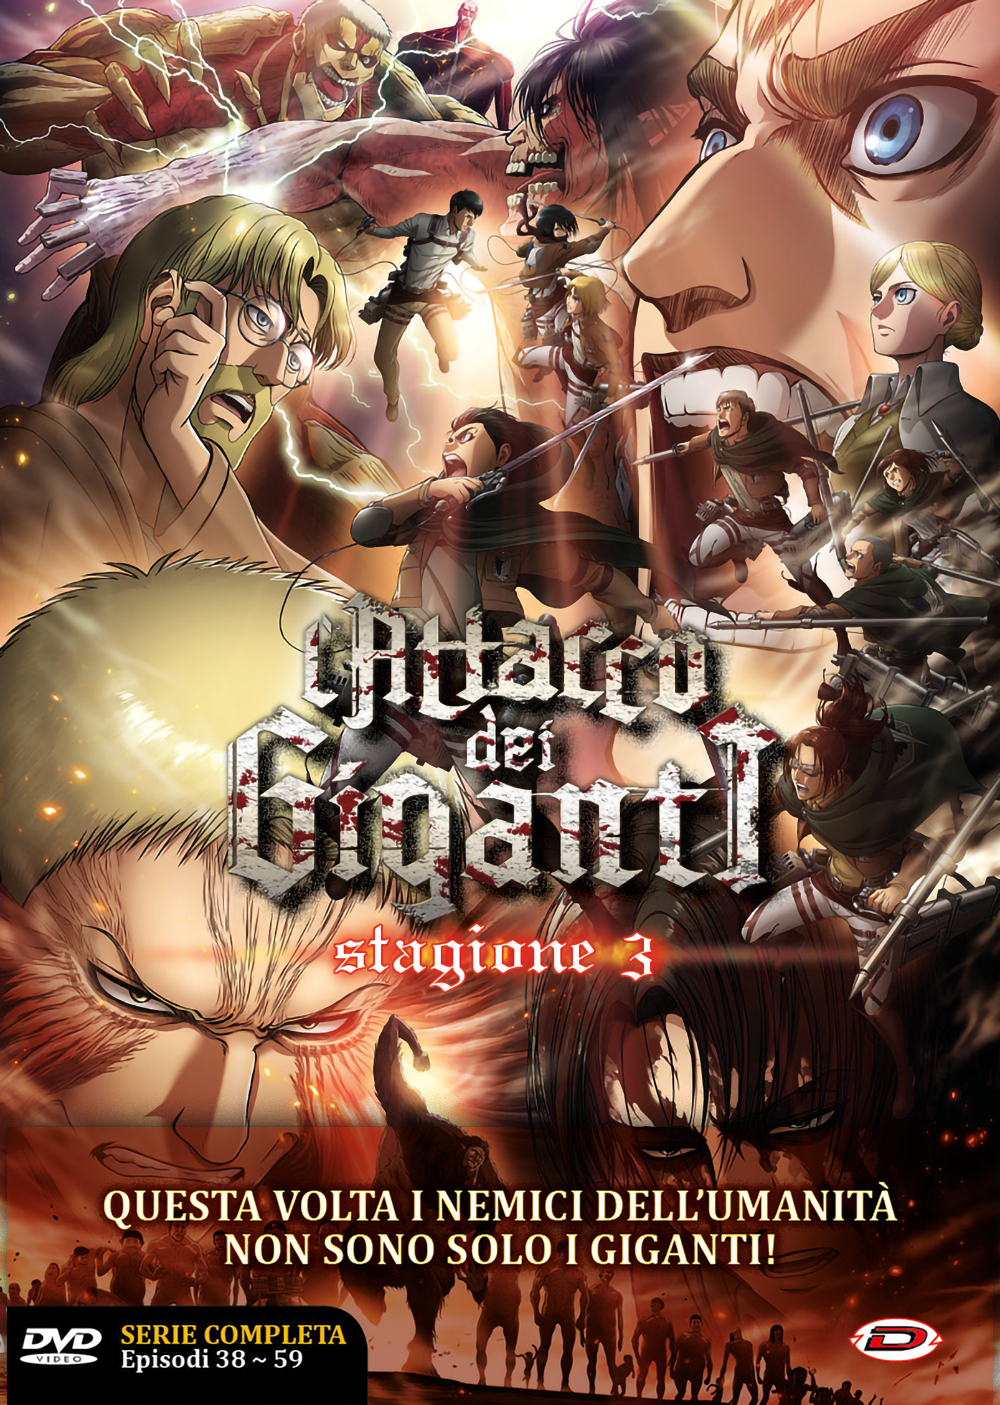 Dvd Attacco Dei Giganti (L') - Stagione 03 The Complete Series (4 Dvd) (Eps 01-22) NUOVO SIGILLATO, EDIZIONE DEL 23/03/2022 SUBITO DISPONIBILE